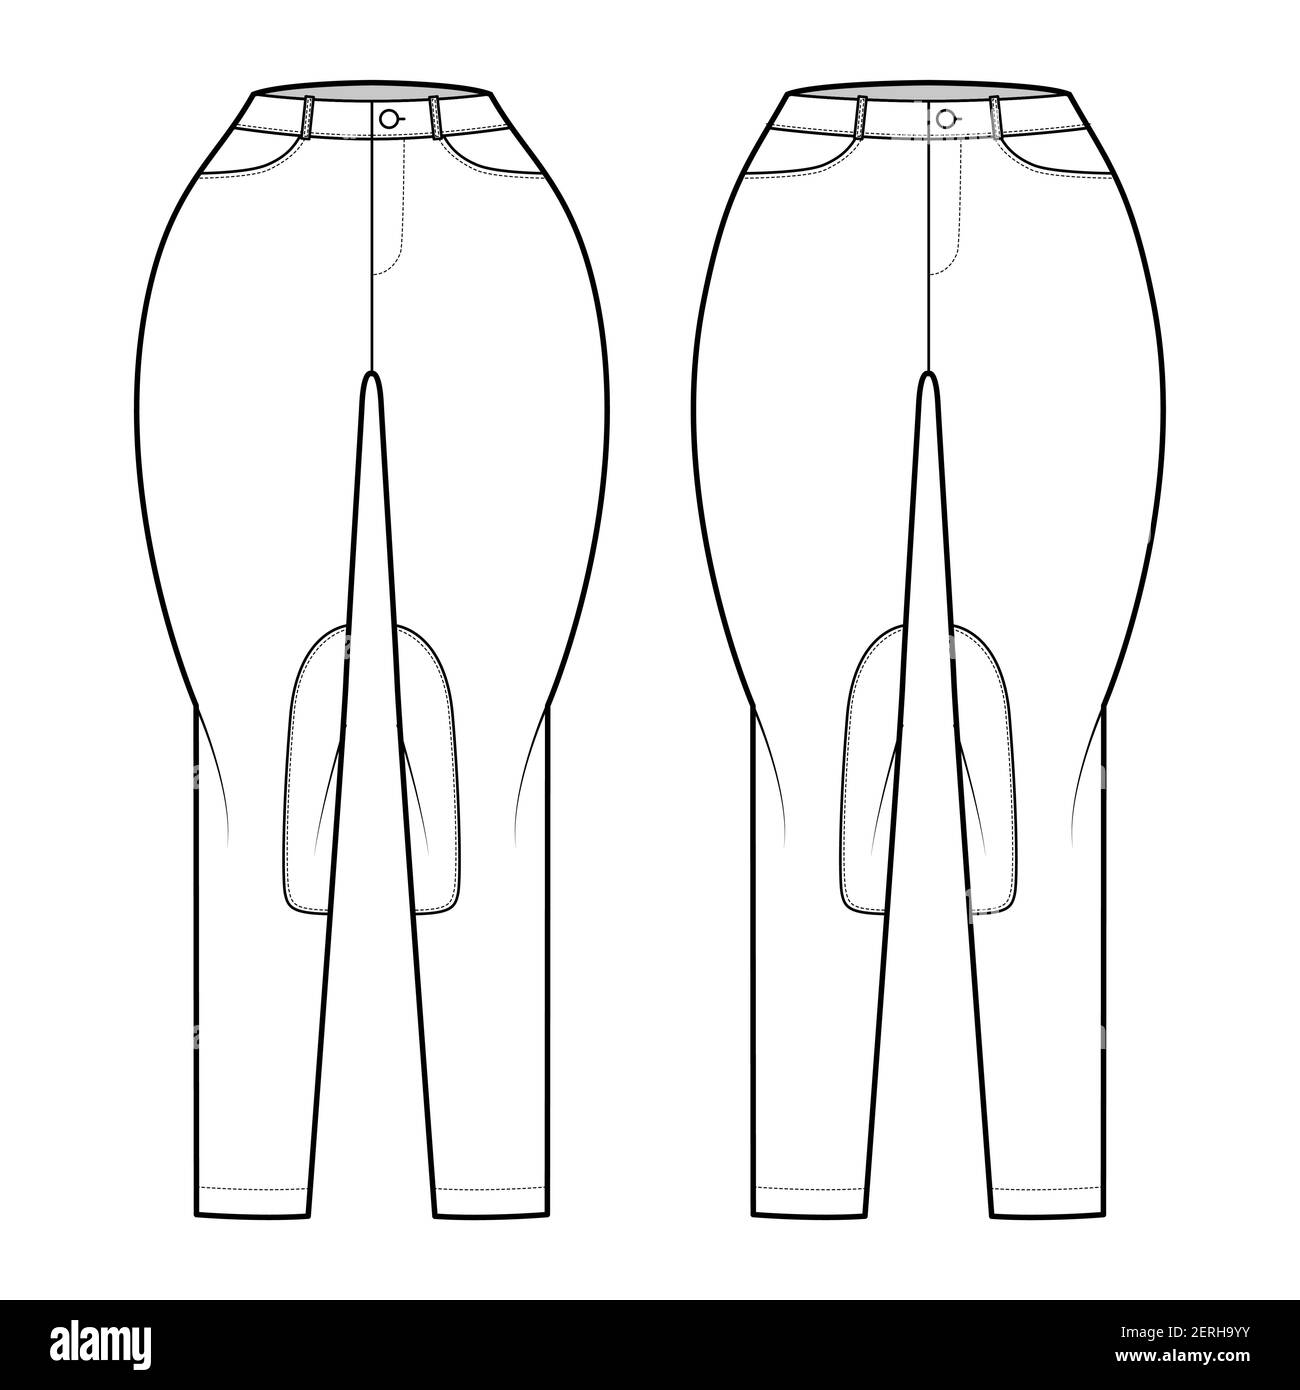 Ensemble de jeans Classic Jodhpurs pantalons denim technique mode illustration avec taille basse normale, taille haute, passants de ceinture, pleine longueur. Avant modèle plat, couleur blanche. Maquette CAD pour femmes et hommes Illustration de Vecteur